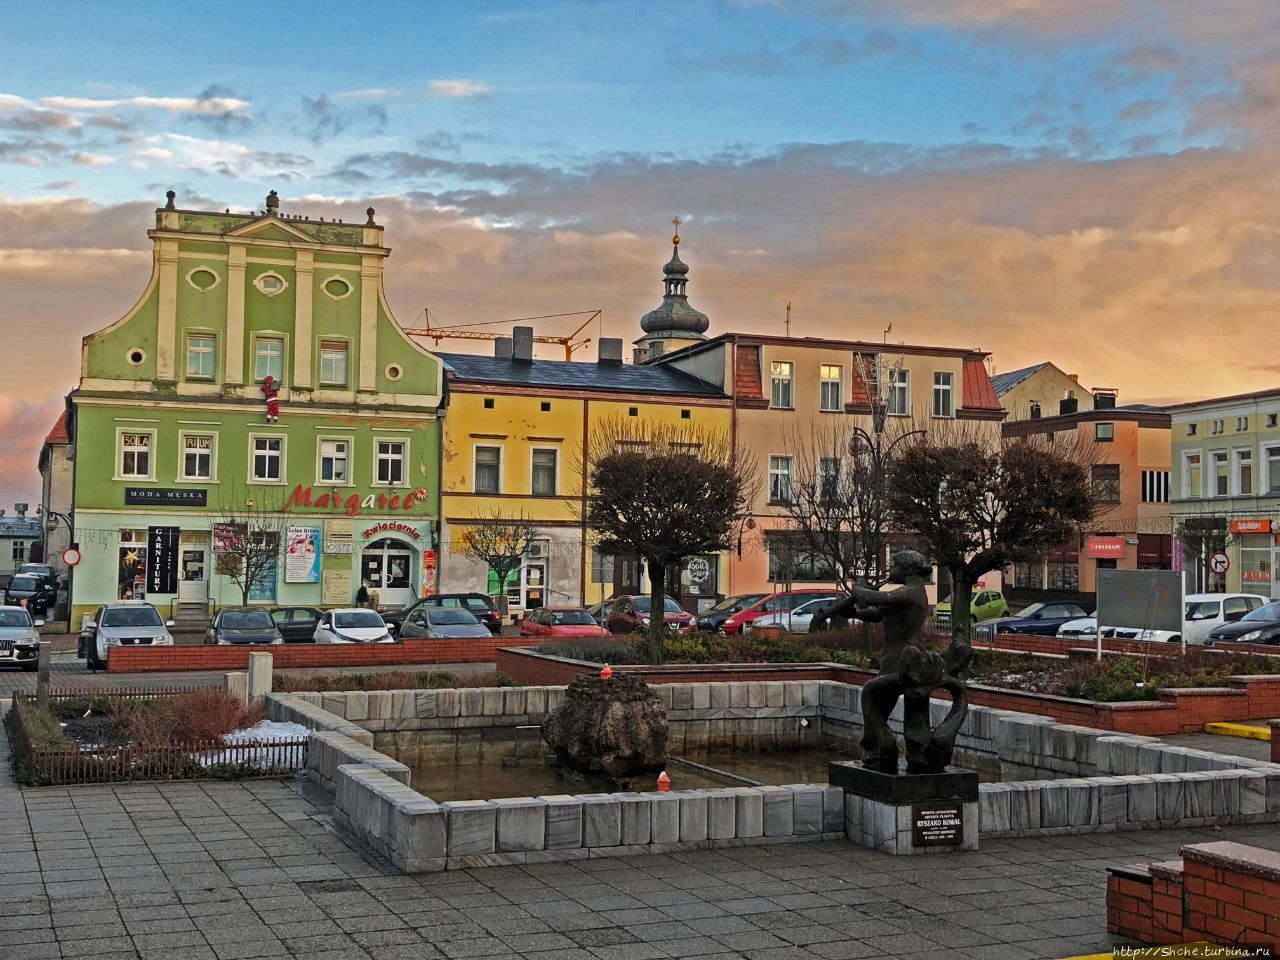 Площадь Рынок Крапковице, Польша